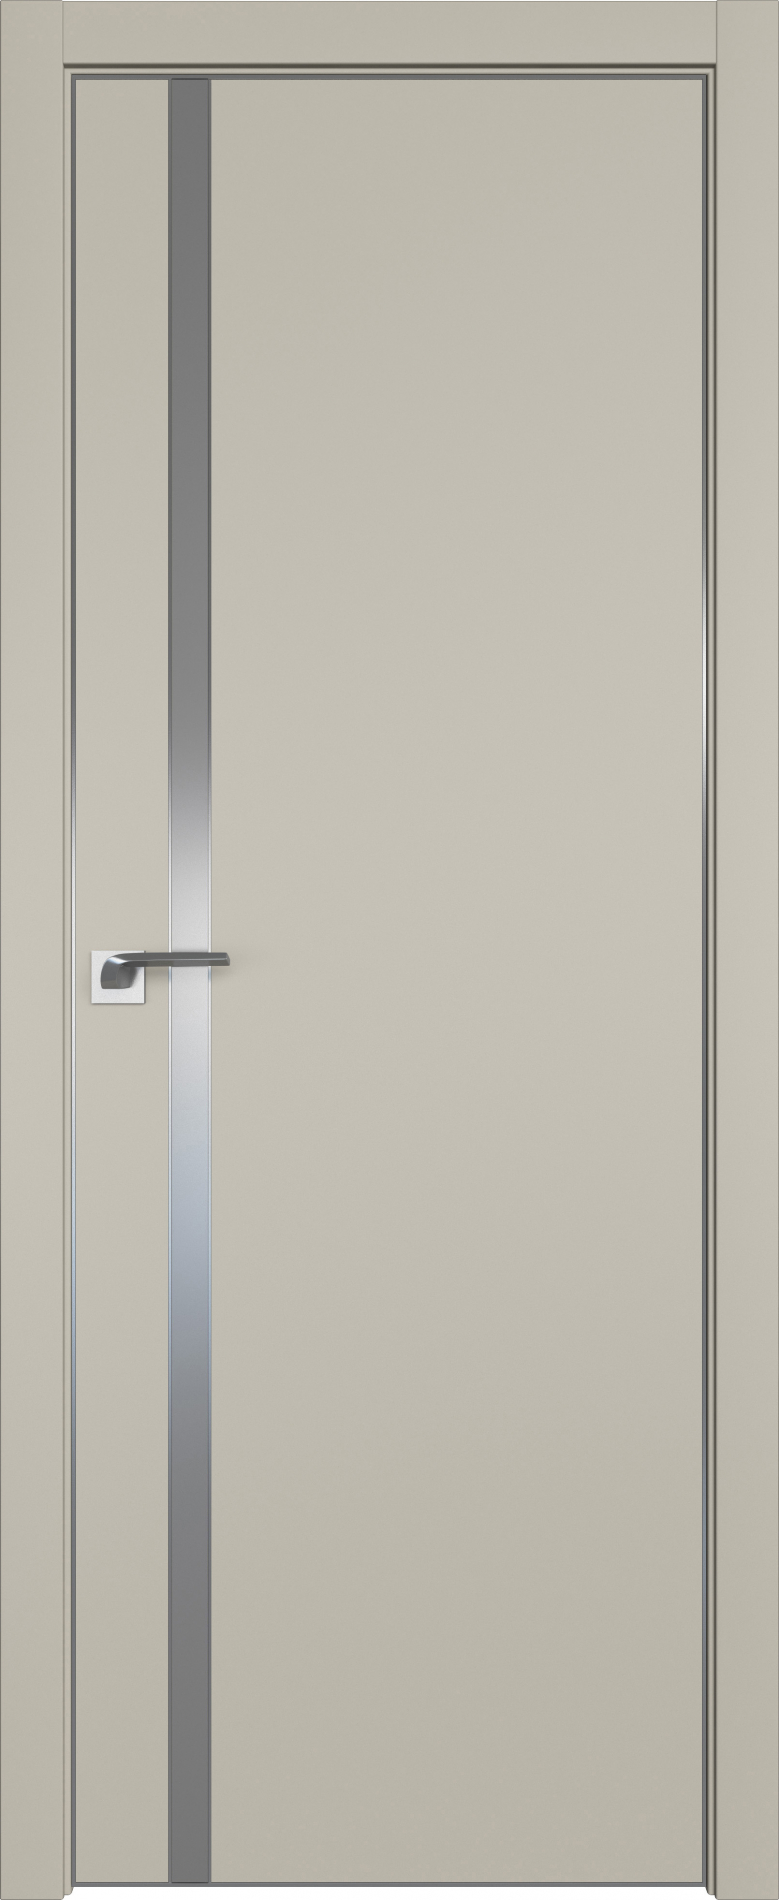 межкомнатные двери  Profil Doors 122E ABS шеллгрей